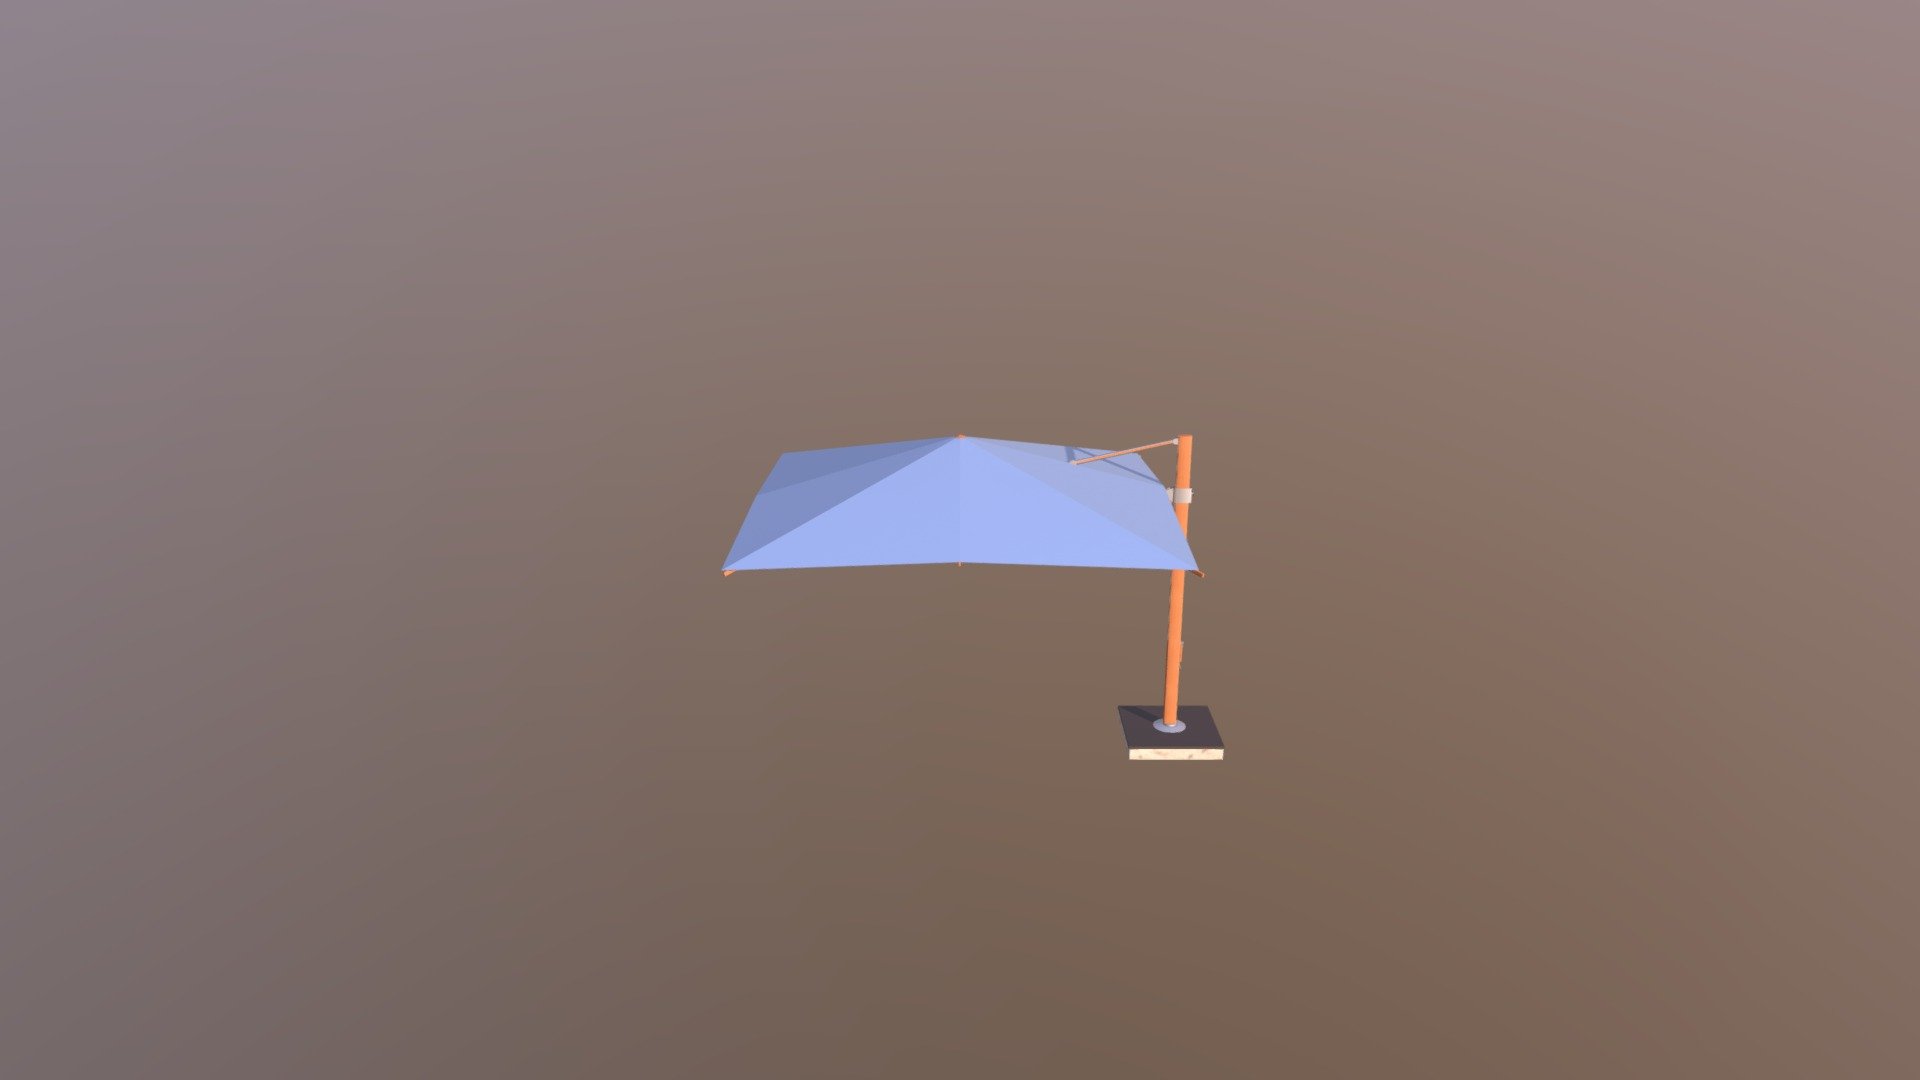 3D Umbrella Animation - Umbrella Optimized - 3D model by dfrahman 3d model